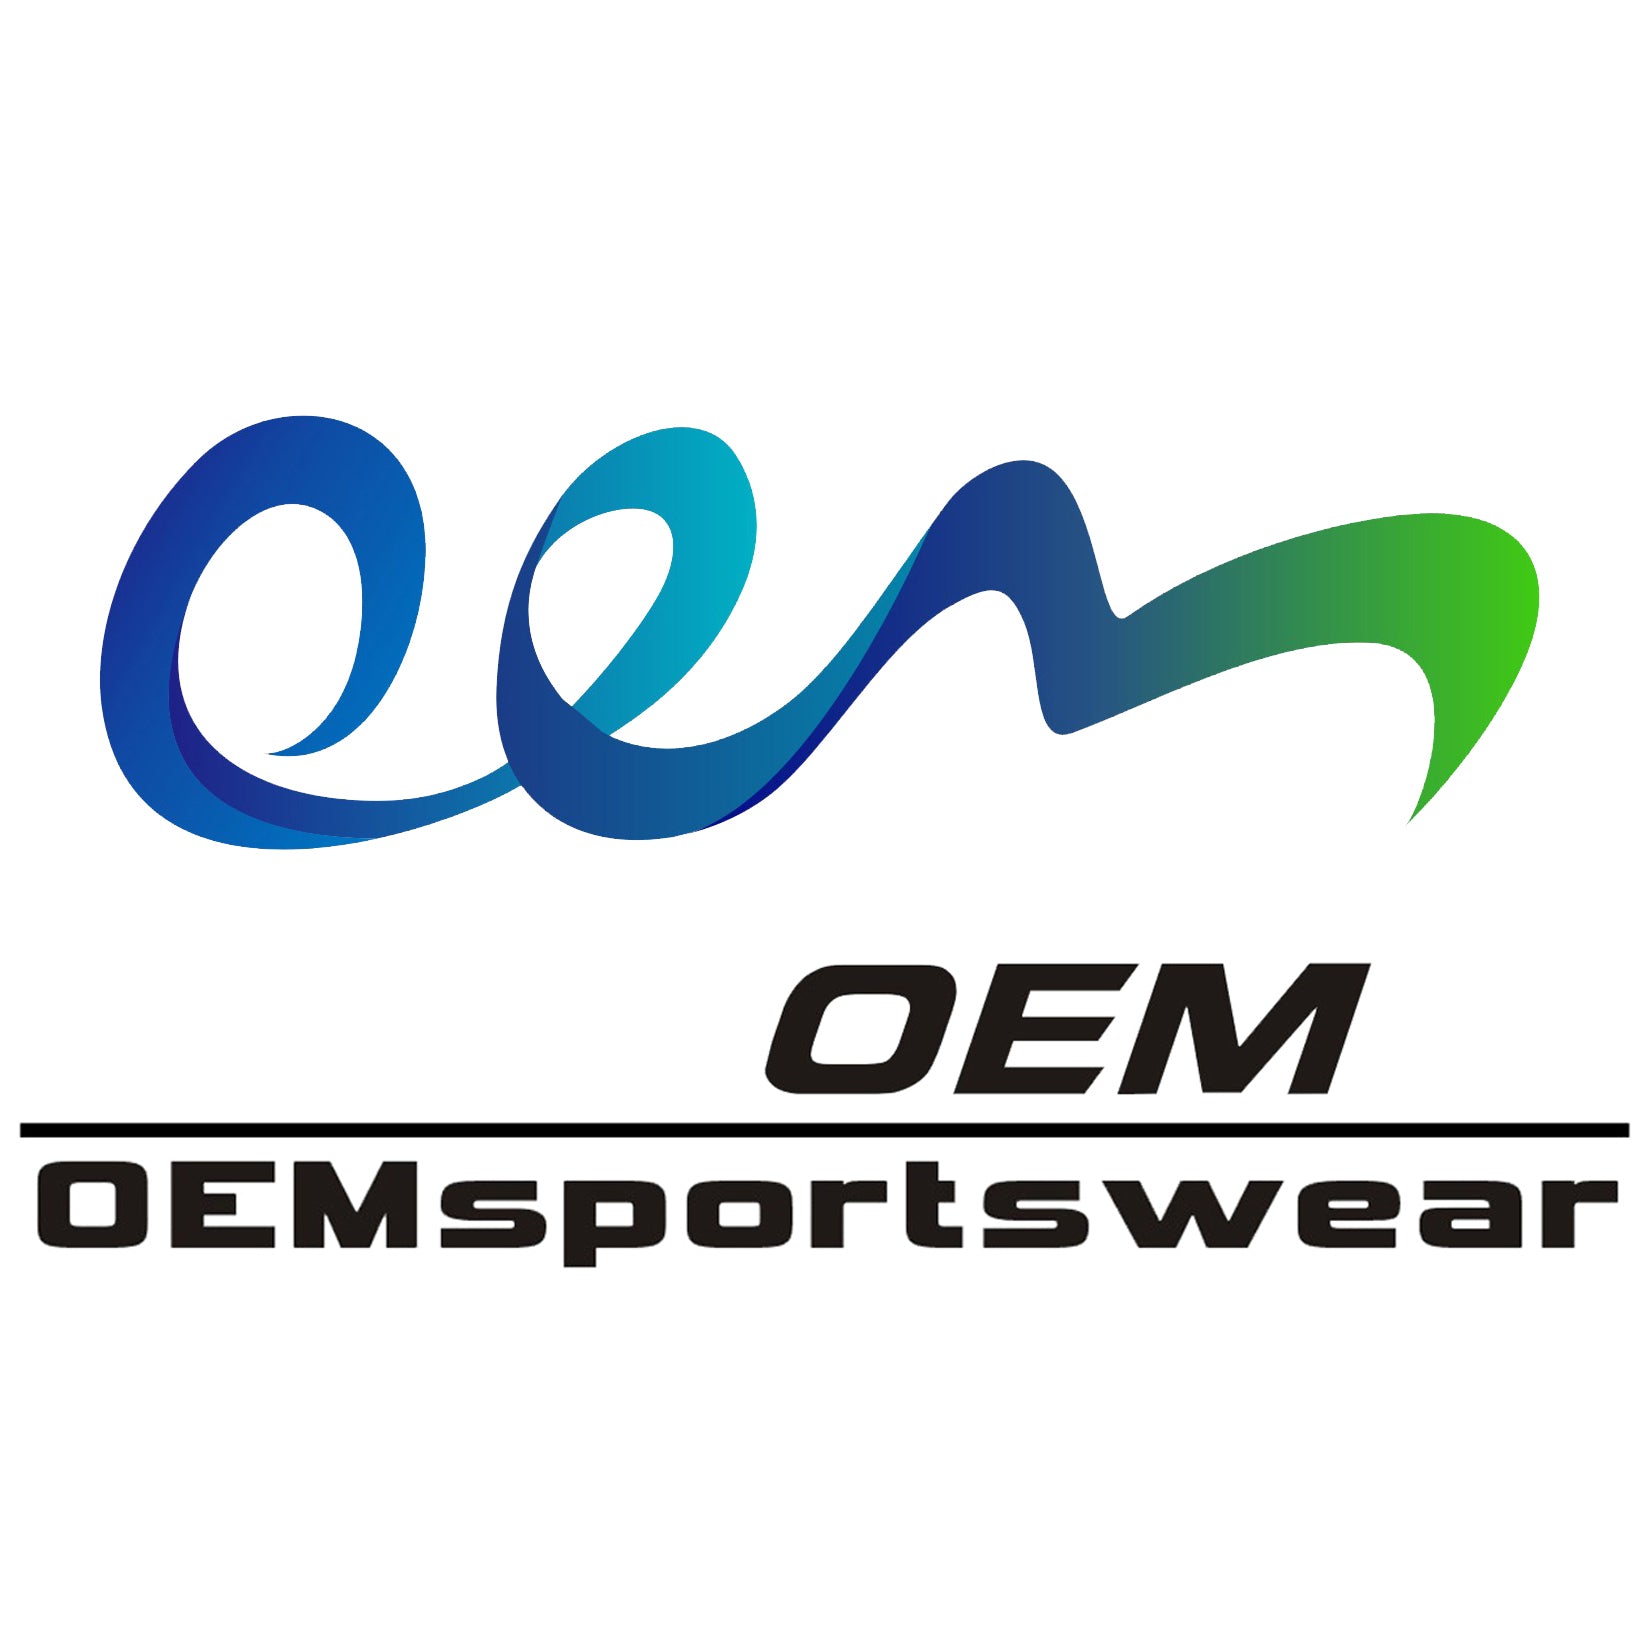 OEMsportswear